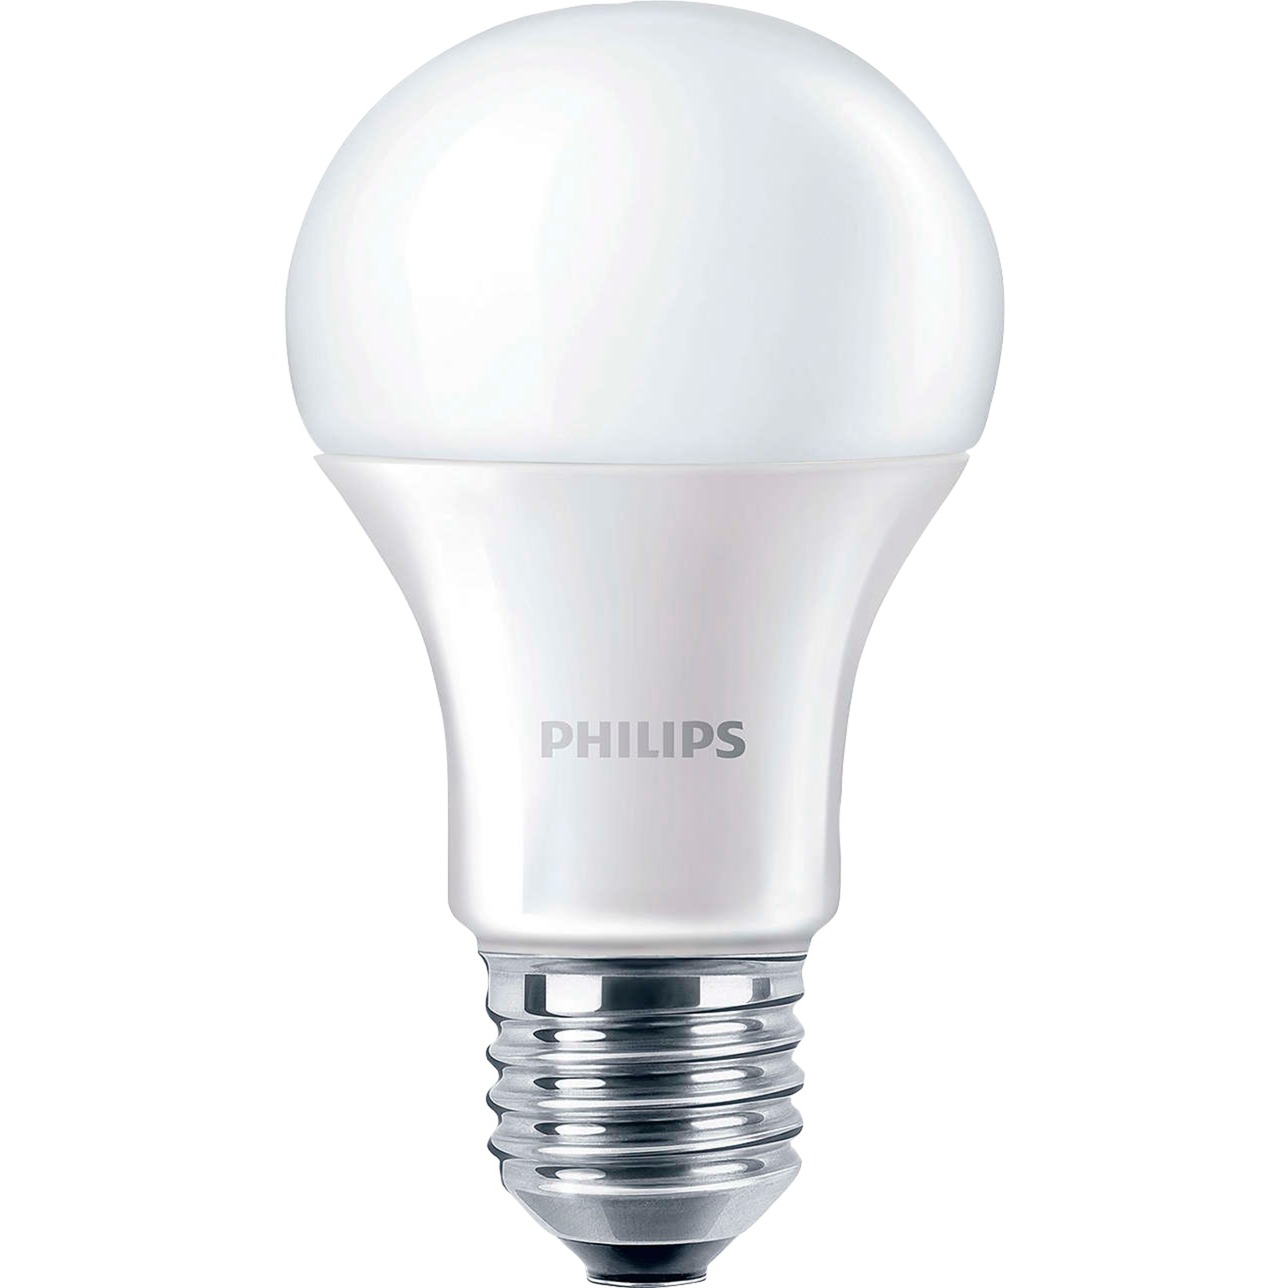 CorePro LEDbulb ND 13-100W A60 E27 827, LED-Lampe